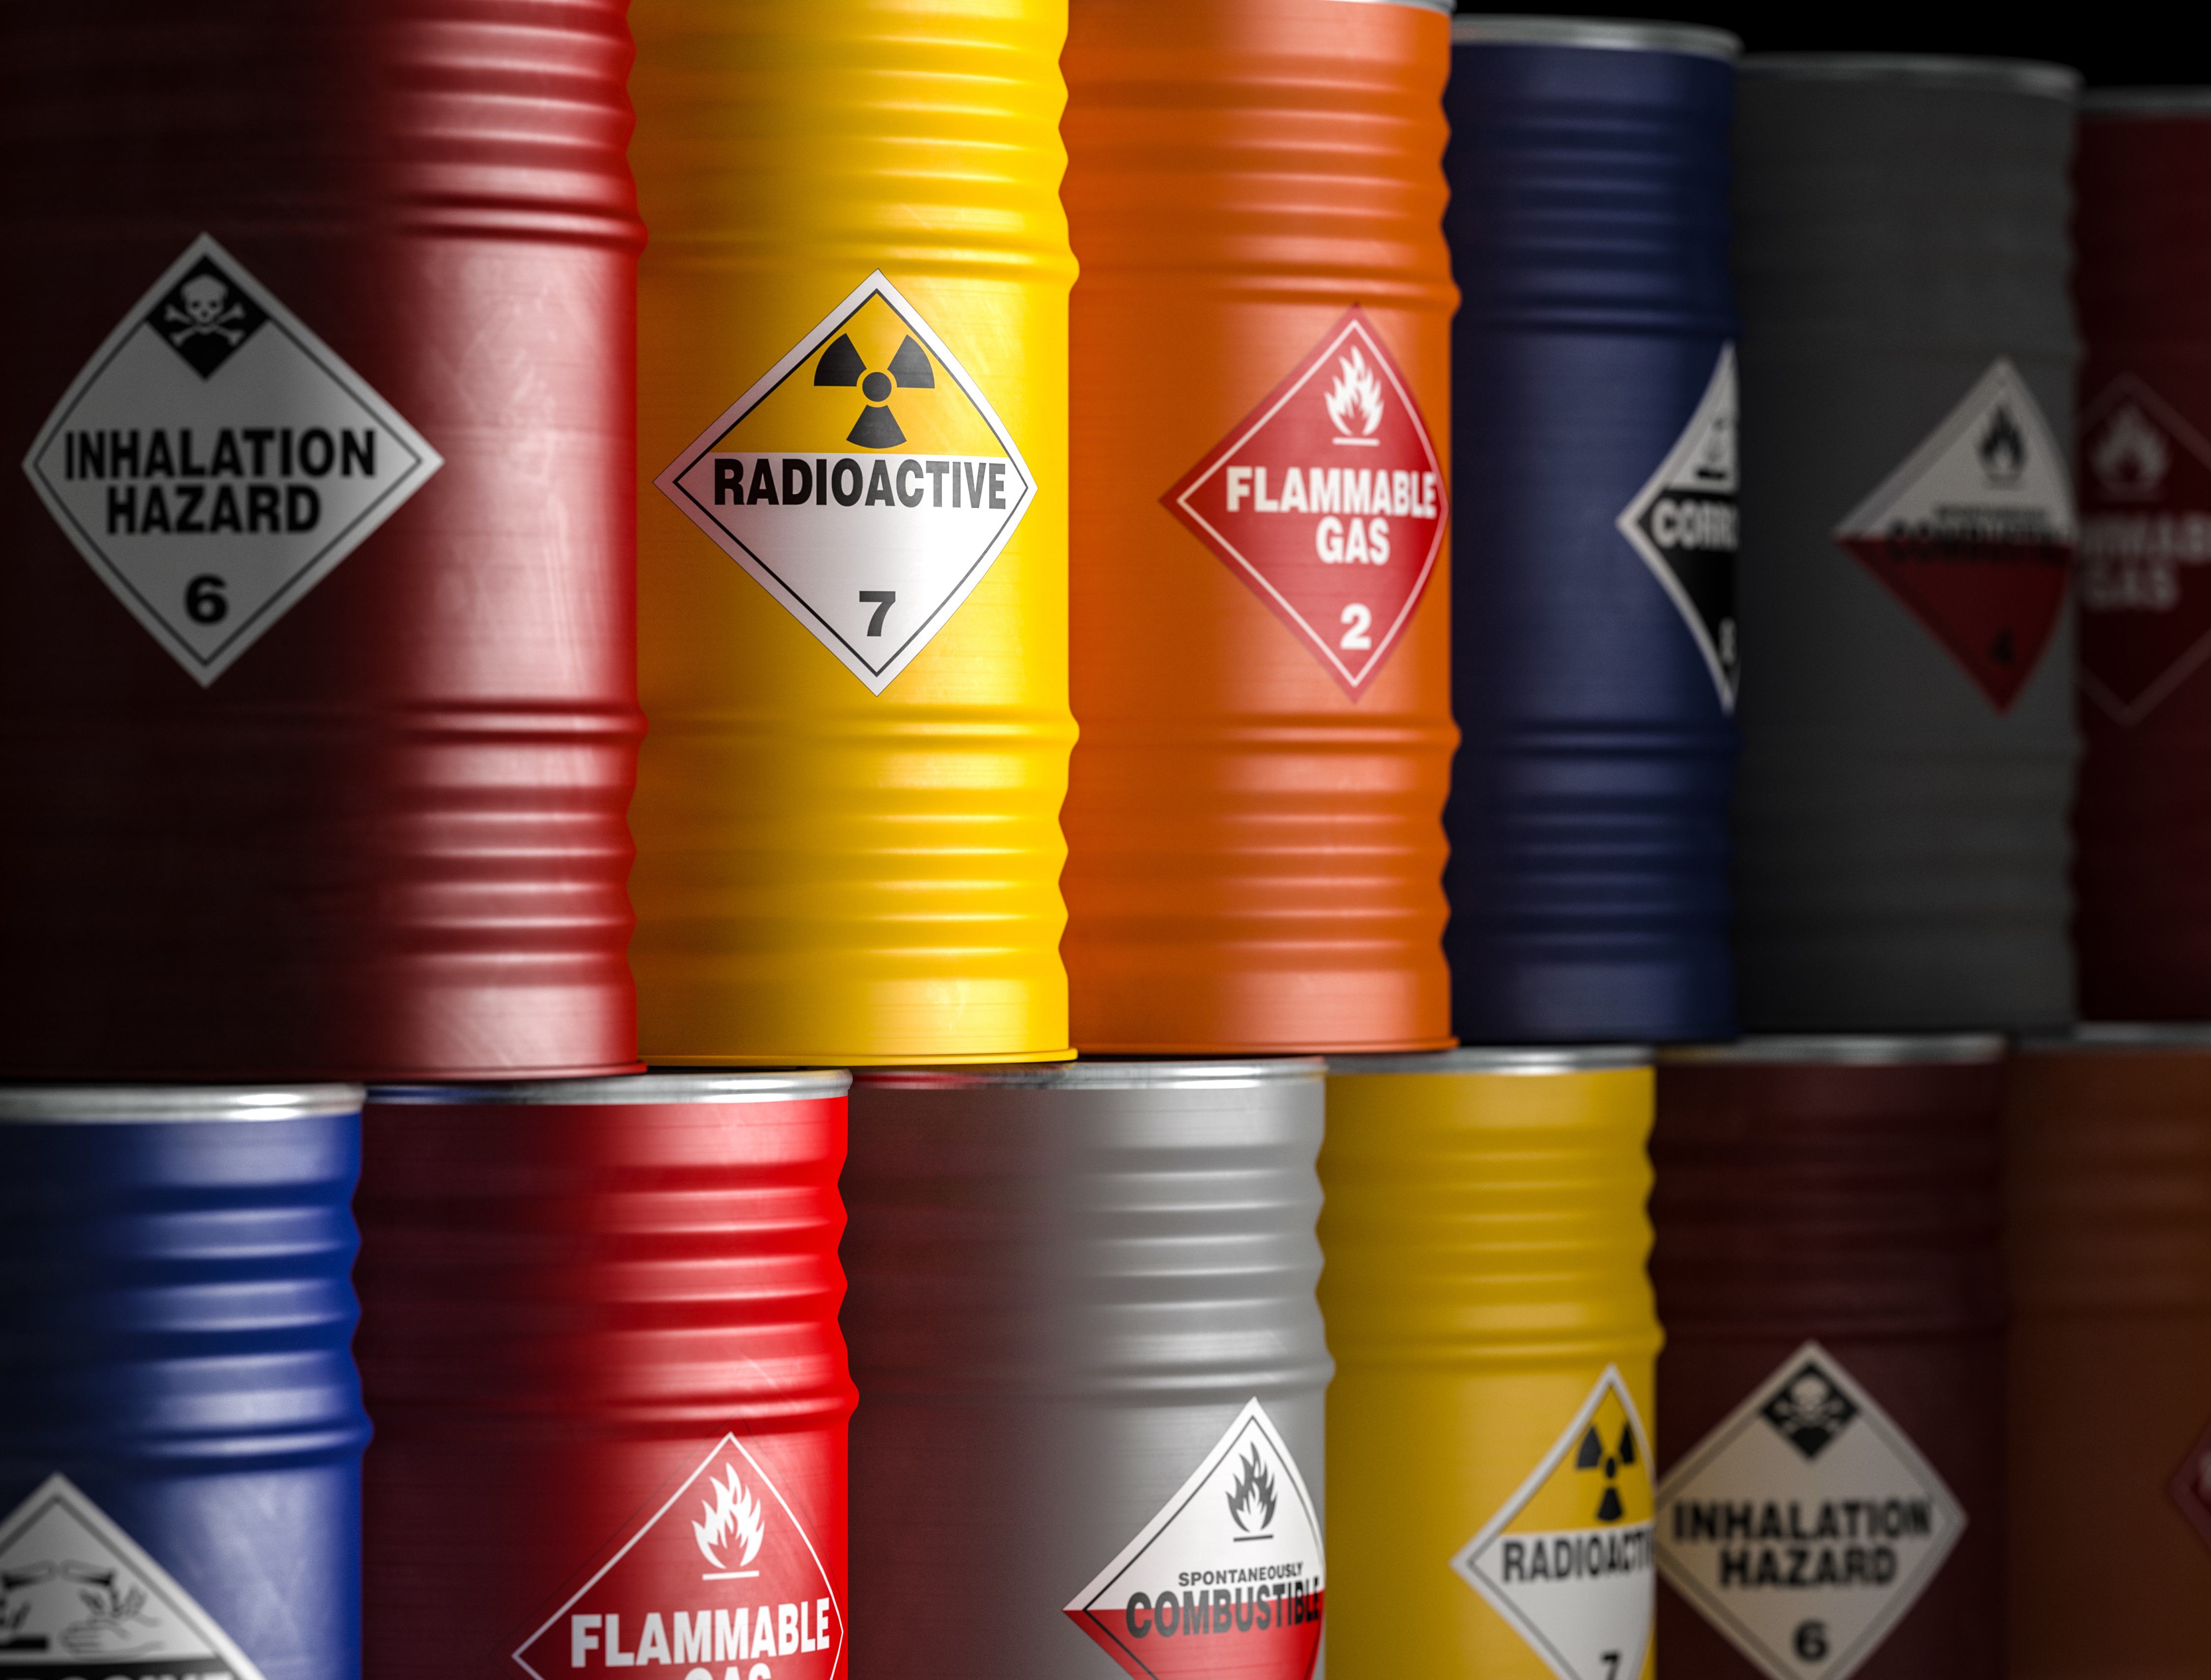 different types of hazardous goods